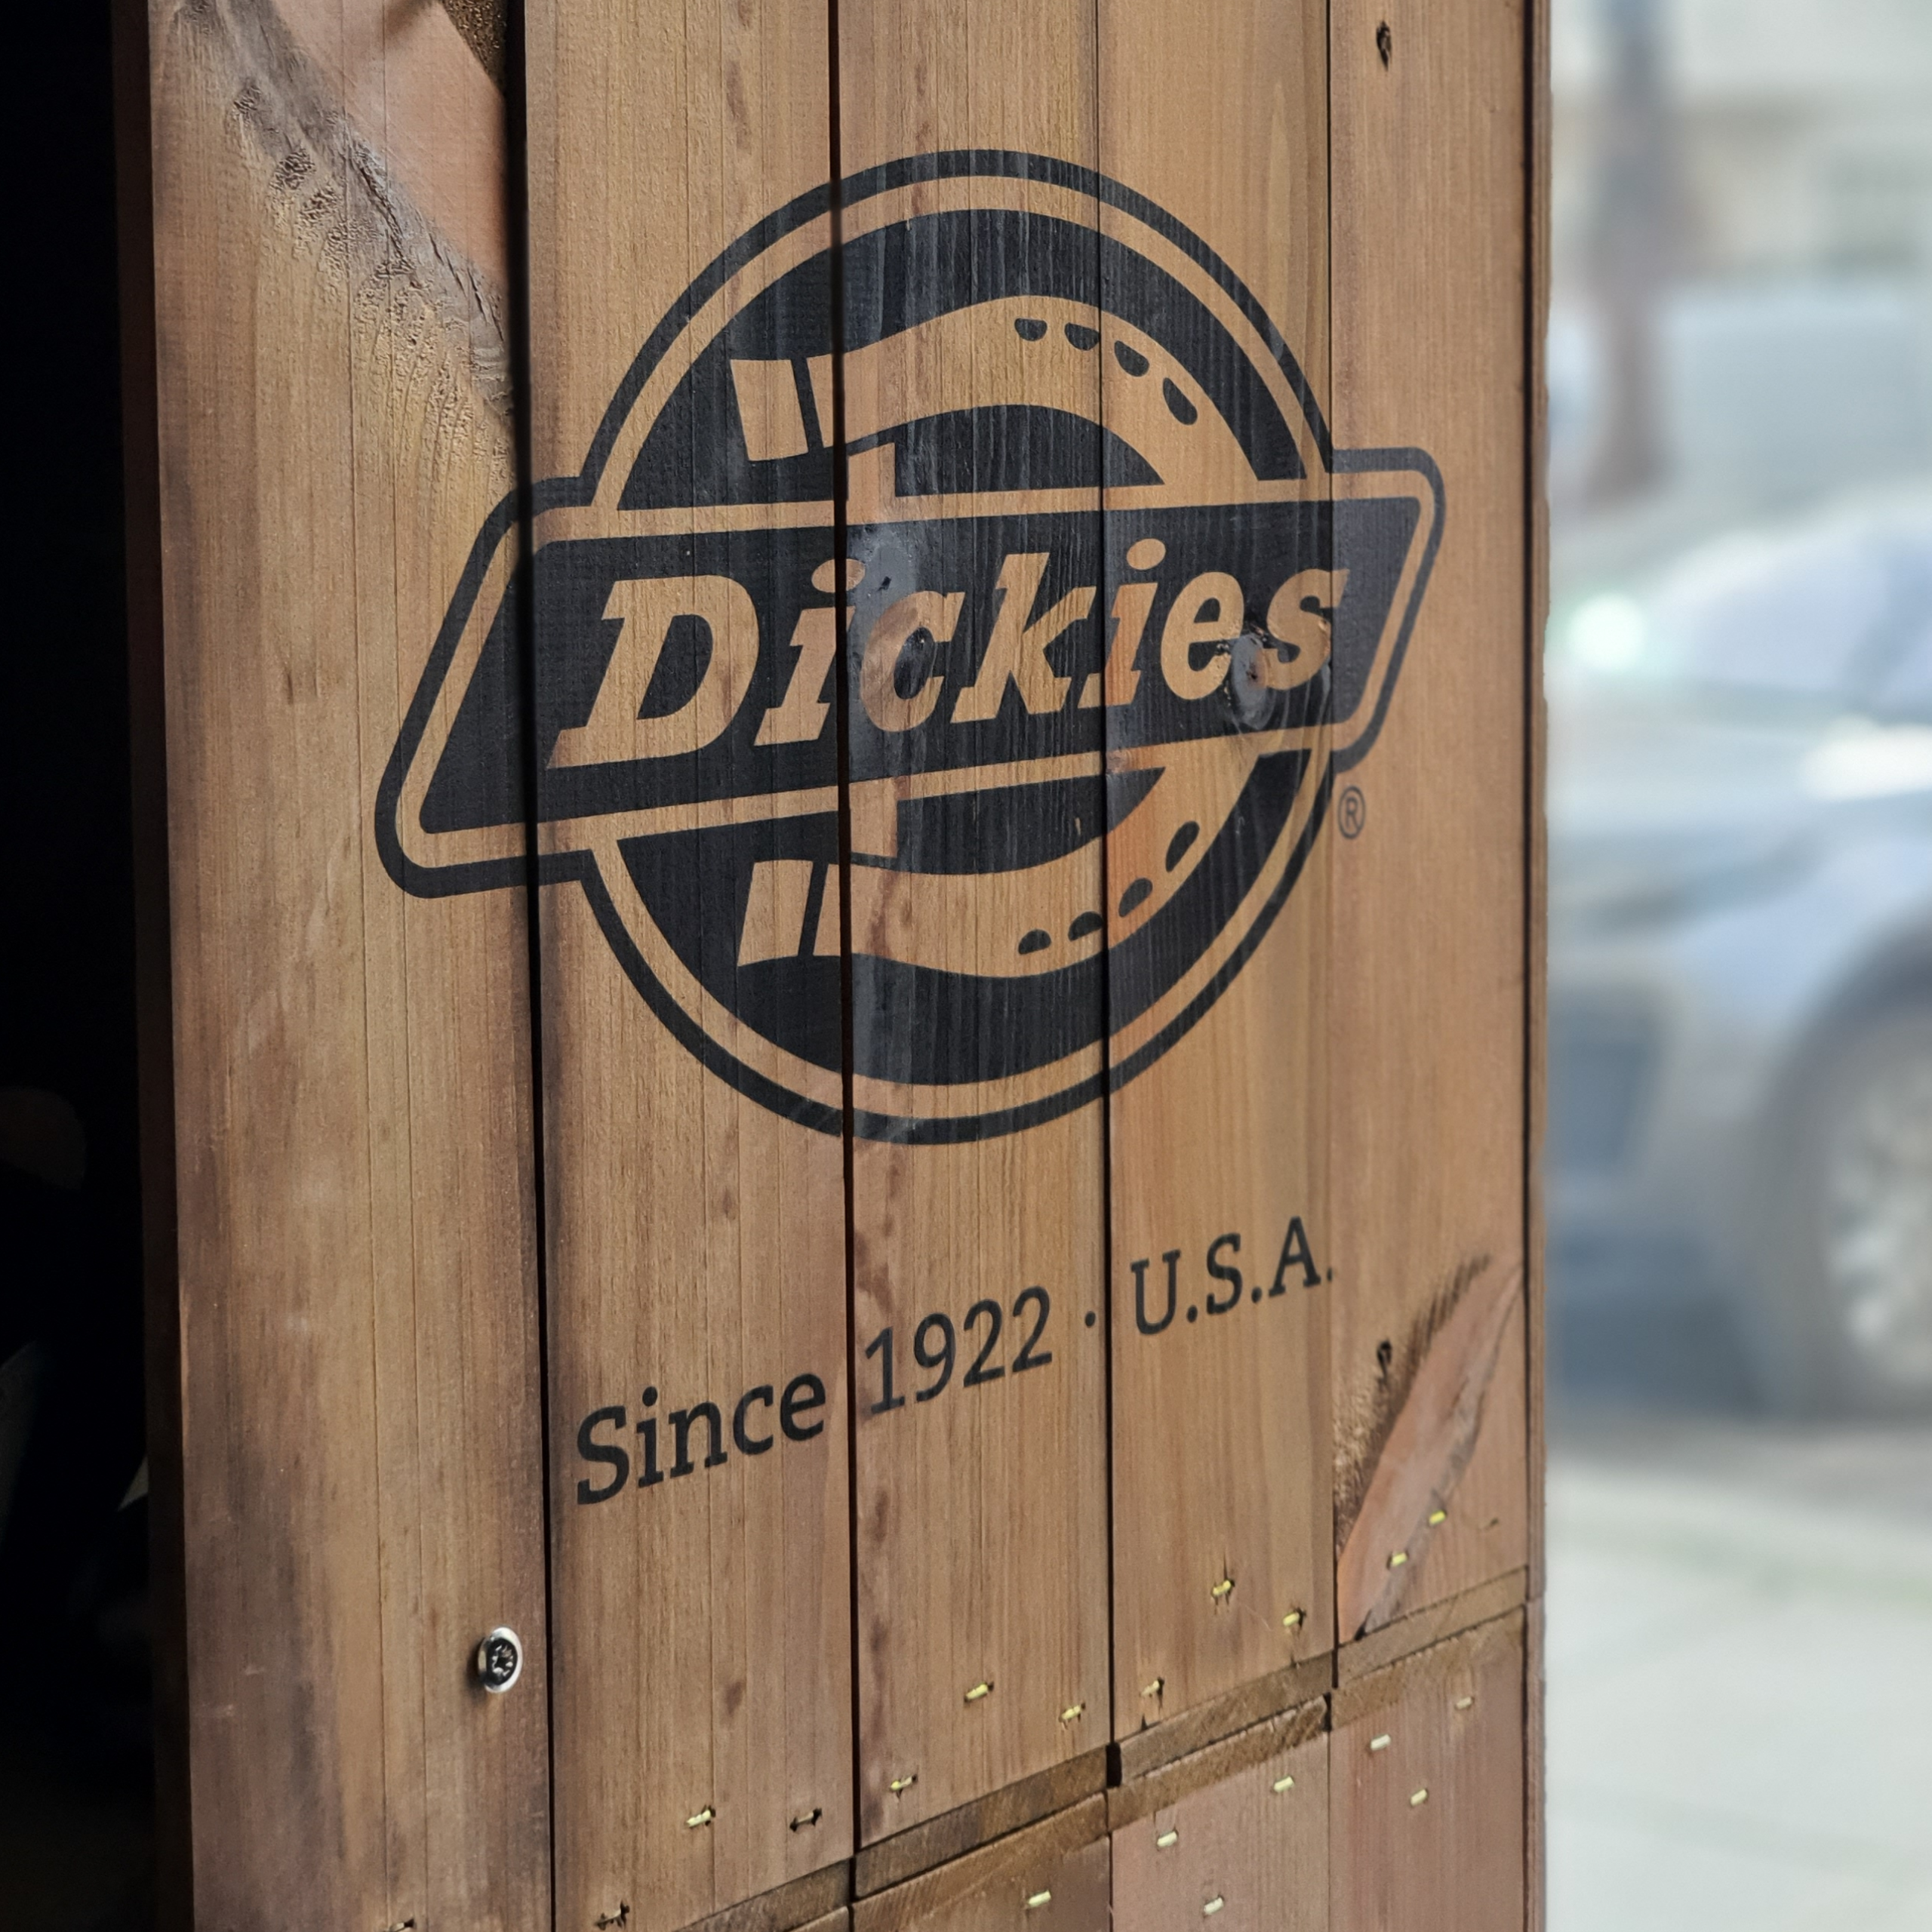 Dickies since 1922 USA